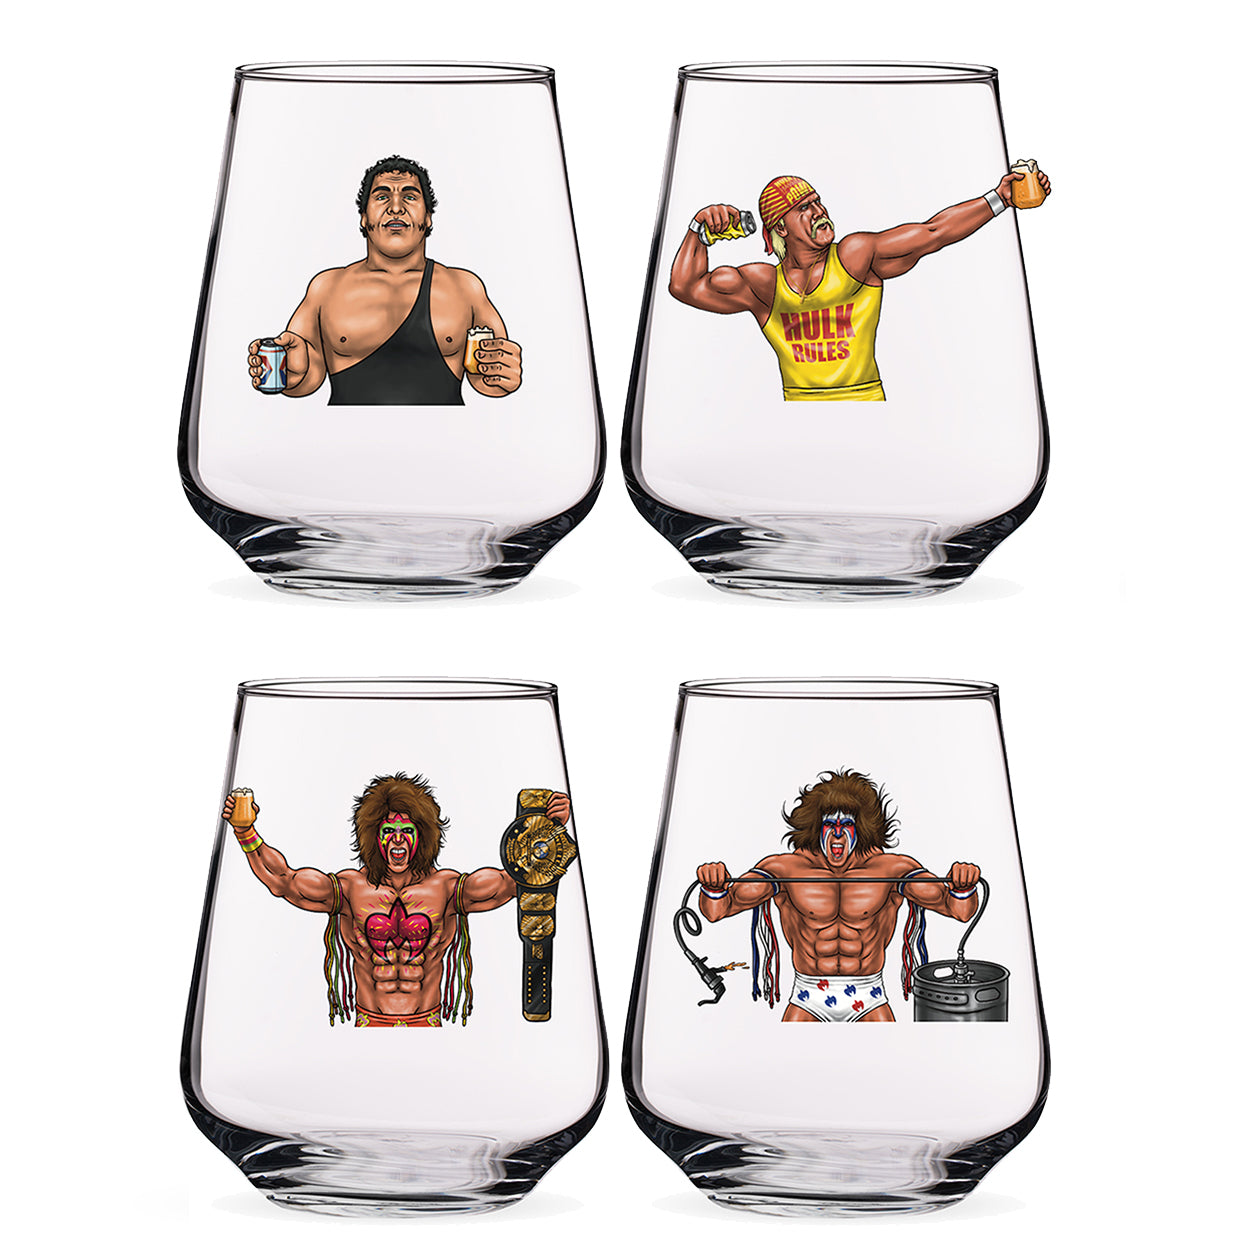 Hogan/Andre + Warrior - PREORDER - BUNDLE Wrestling Beer Glasses